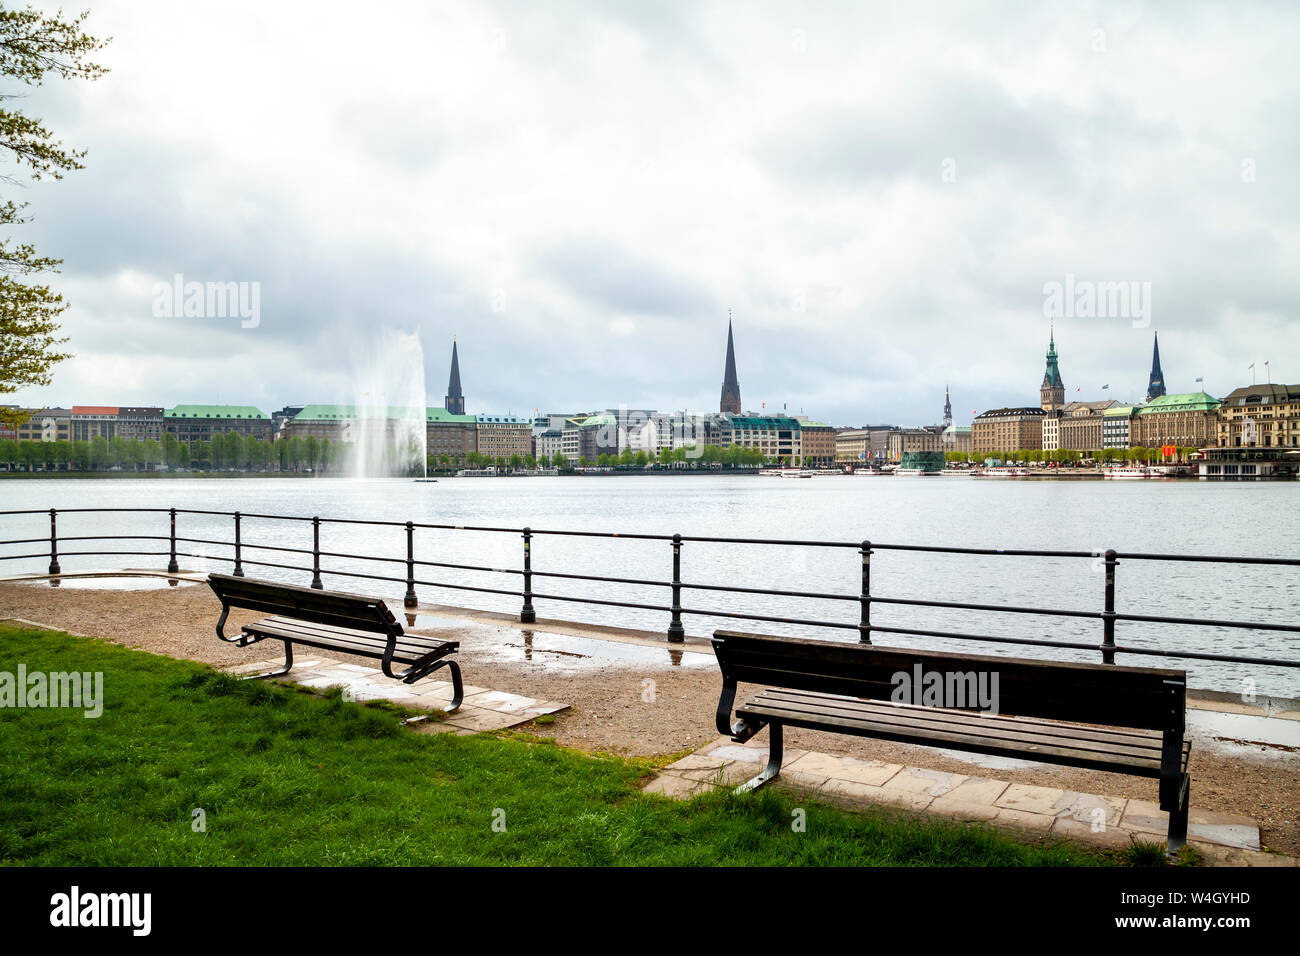 Blick auf die Stadt mit Binnenalster im Vordergrund, Hamburg, Deutschland Stockfoto